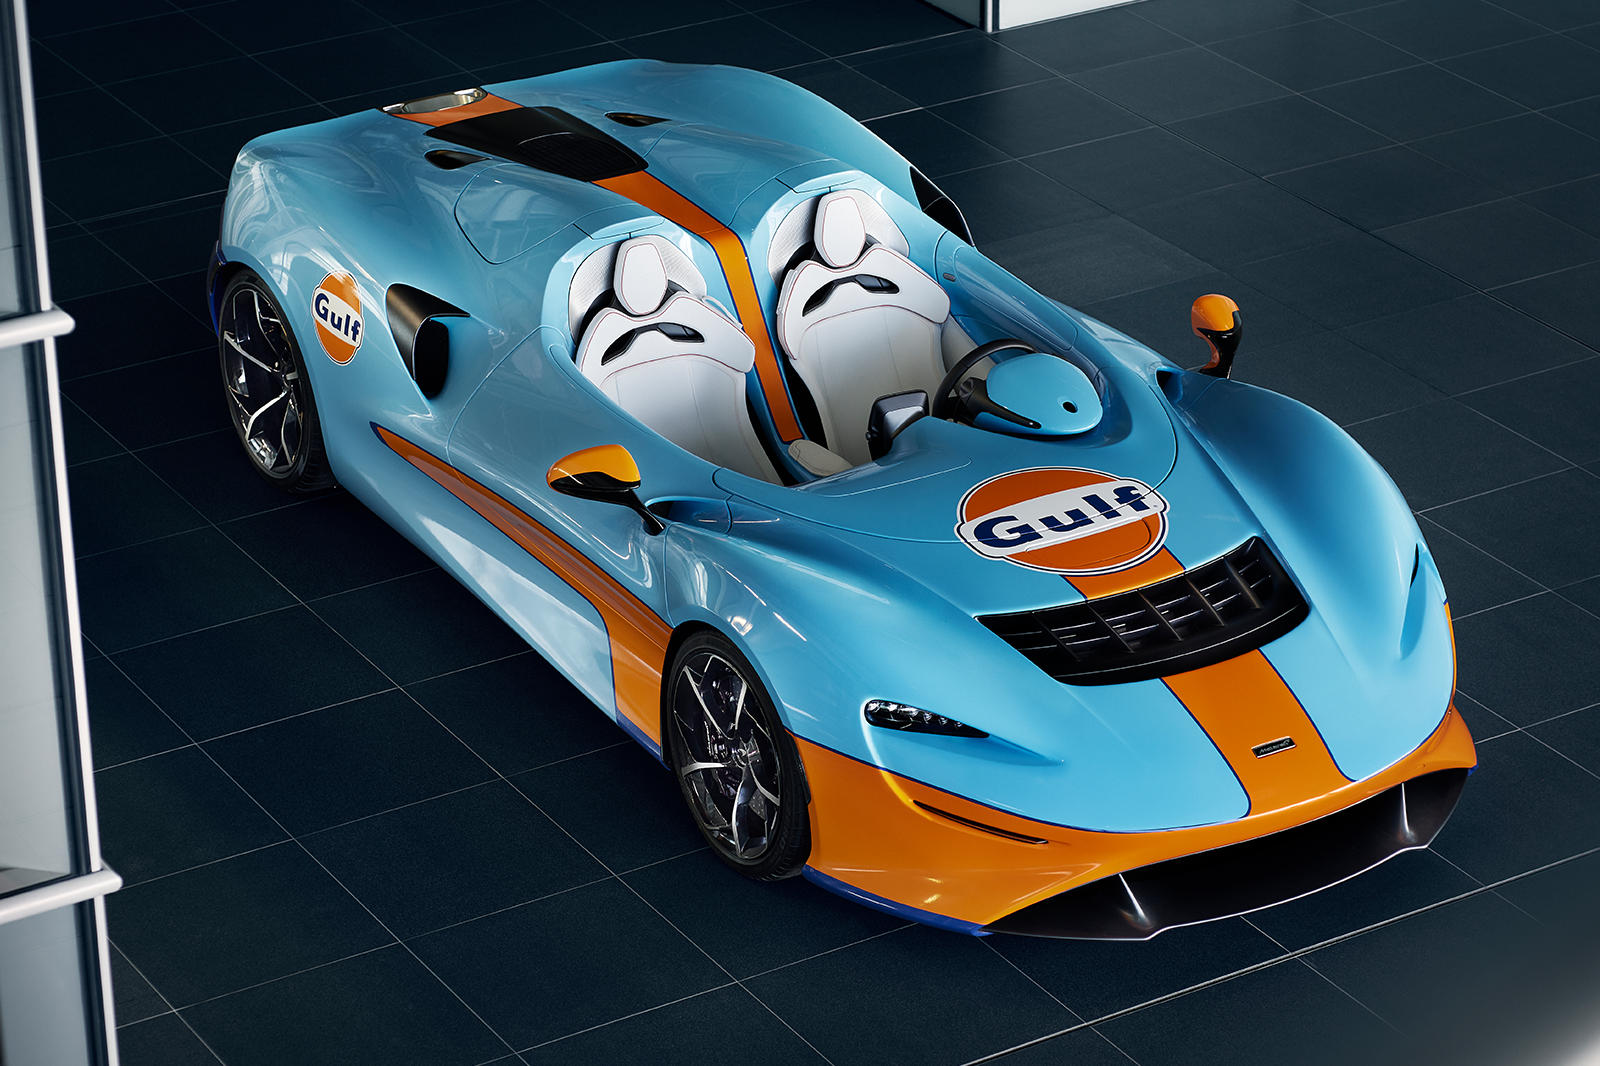 Хотя MSO предложит клиентам множество вариантов персонализации, версия с ливреей Gulf, представленная здесь, выглядит фантастически: оранжевая линия посередине кузова дополняет основной синий цвет.